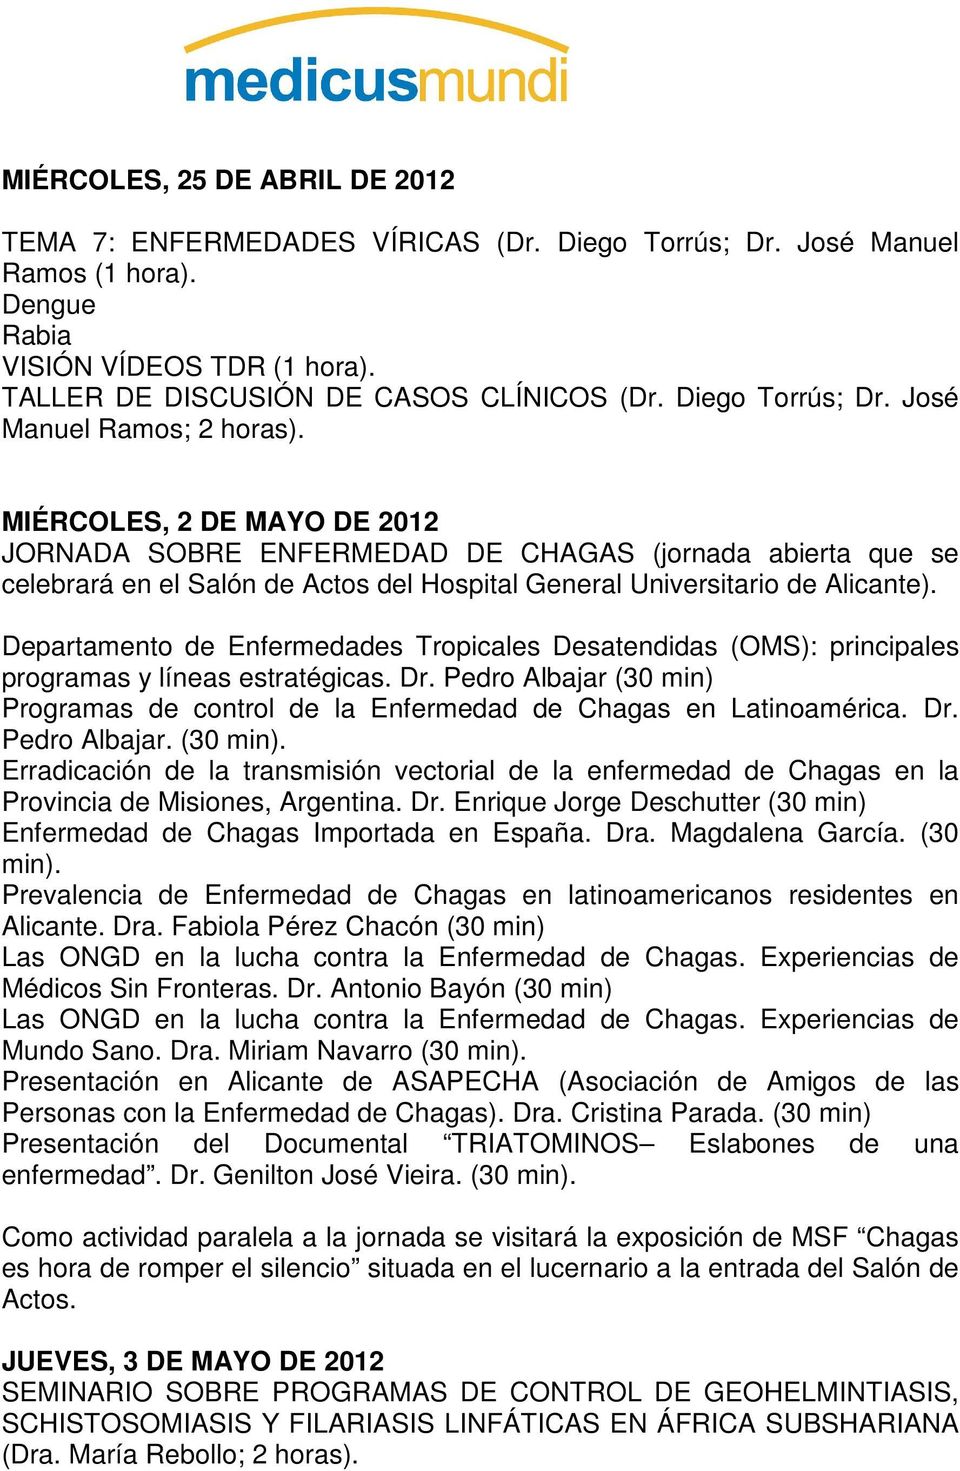 MIÉRCOLES, 2 DE MAYO DE 2012 JORNADA SOBRE ENFERMEDAD DE CHAGAS (jornada abierta que se celebrará en el Salón de Actos del Hospital General Universitario de Alicante).